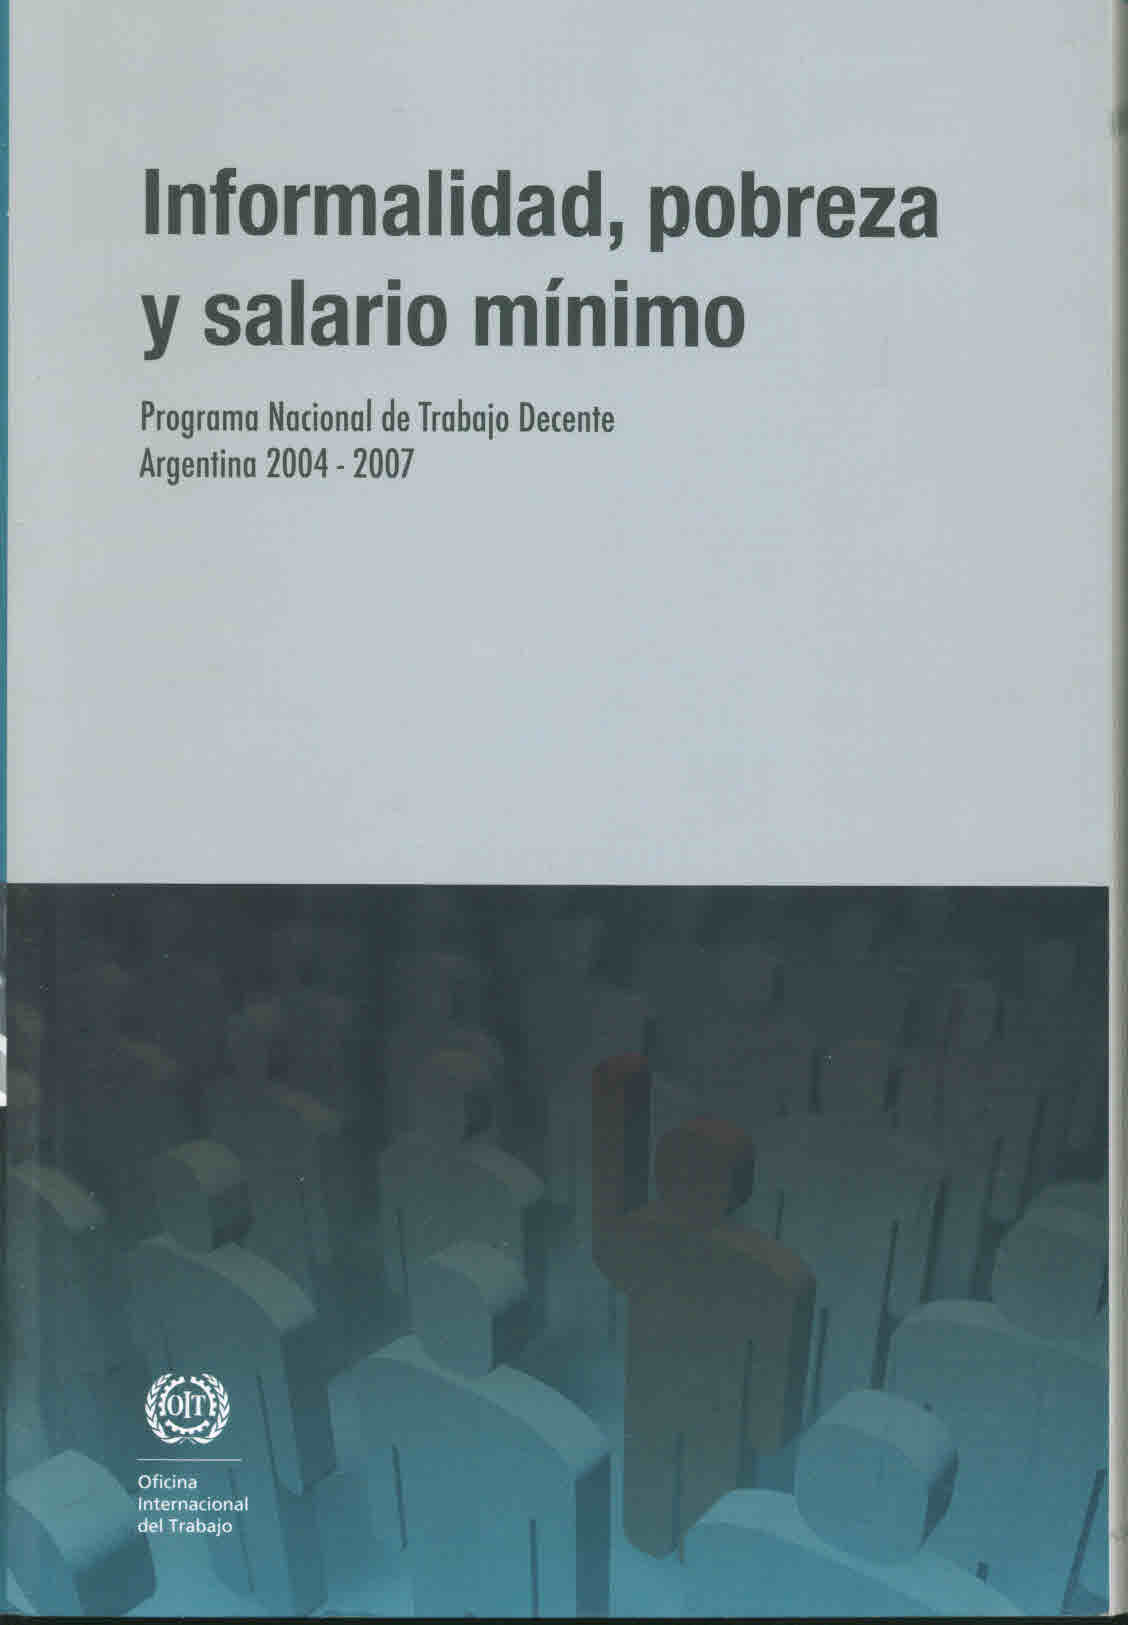 Informalidad, pobreza y salario mínimo. Programa nacional de trabajo decente Argentina 2004-2007